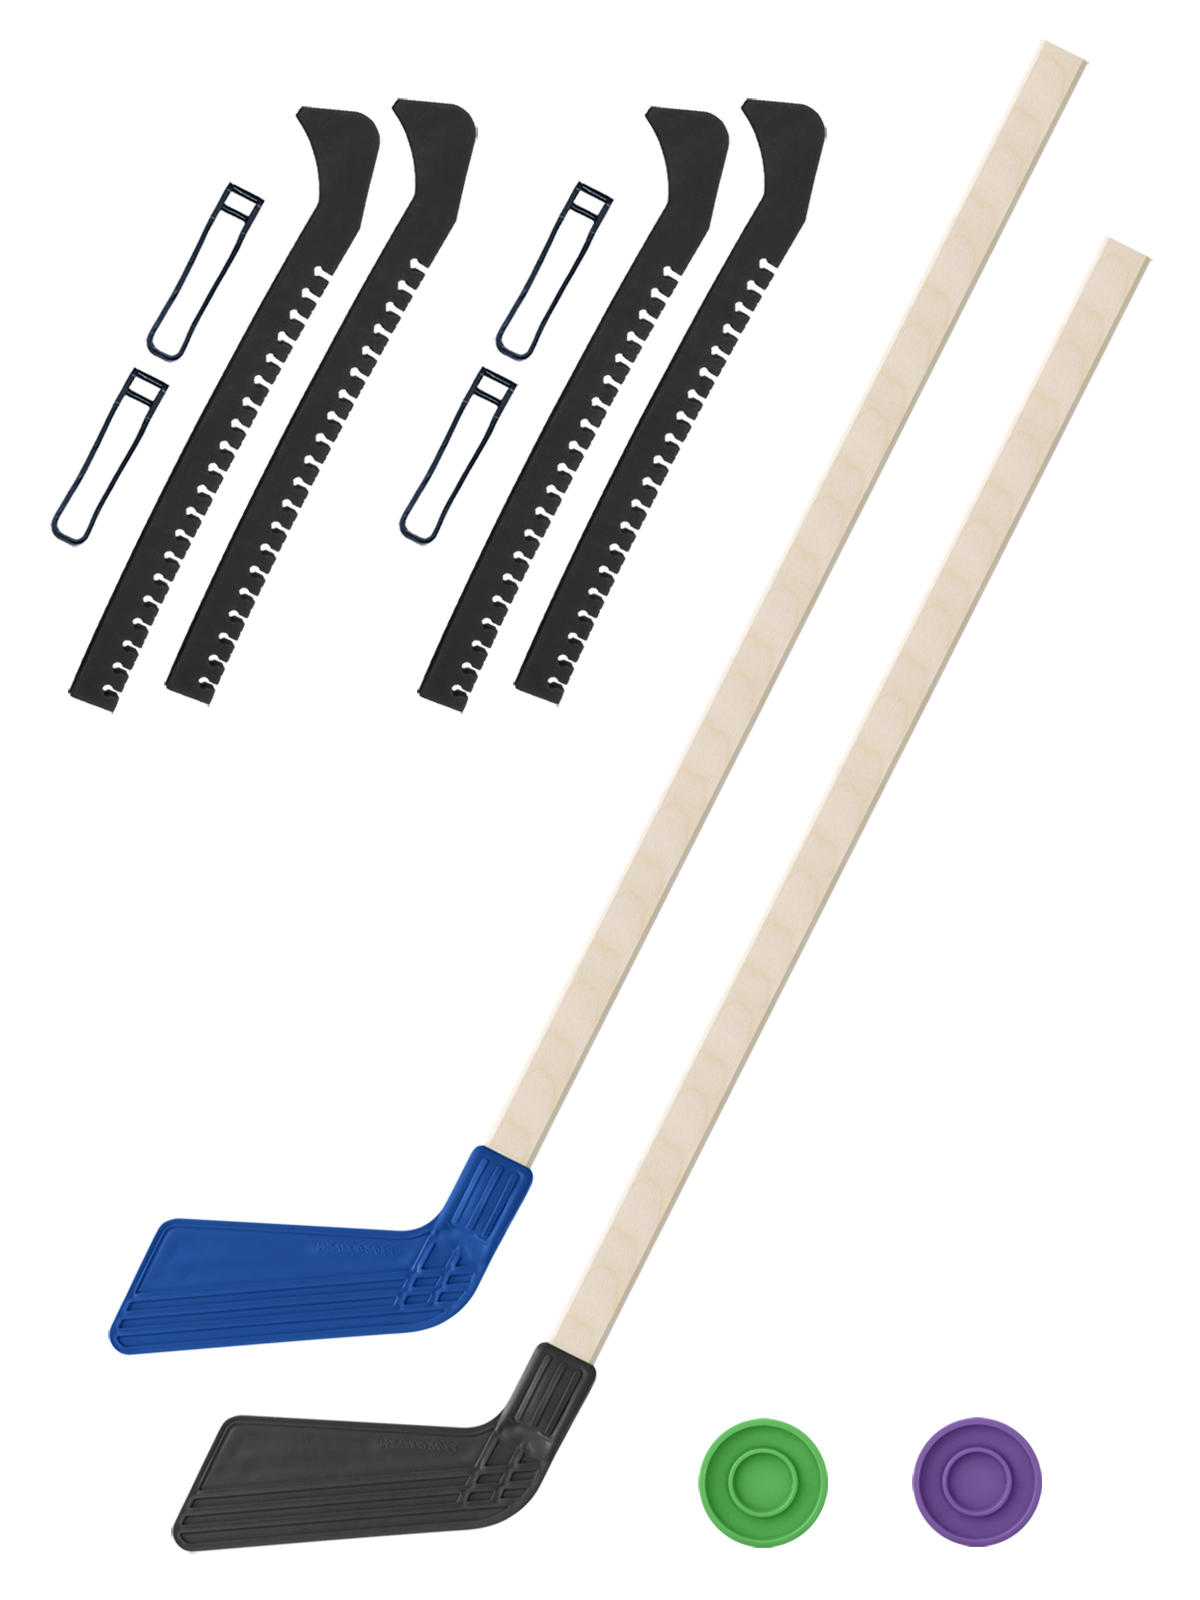 Хоккейный набор Задира-плюс клюшка детская(син+чер)2шт+2 шайбы+чехлы для коньков черн 2шт